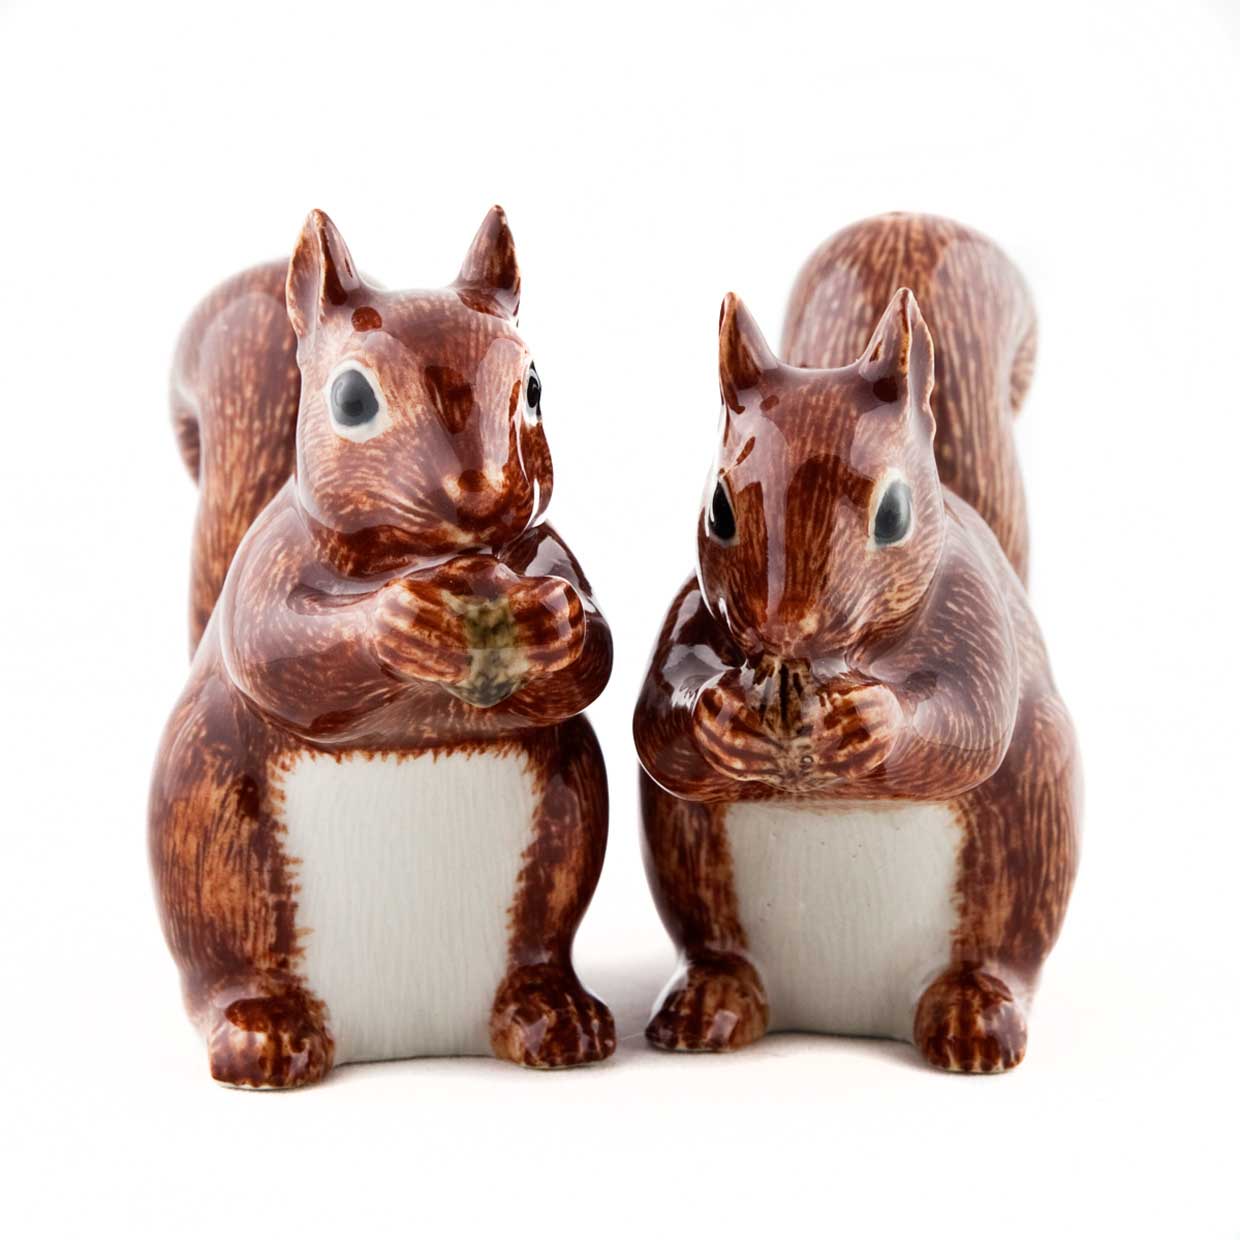 Eichhörnchen / Squirrel - die Salz und Pfeffer Streuer von Quail Ceramics